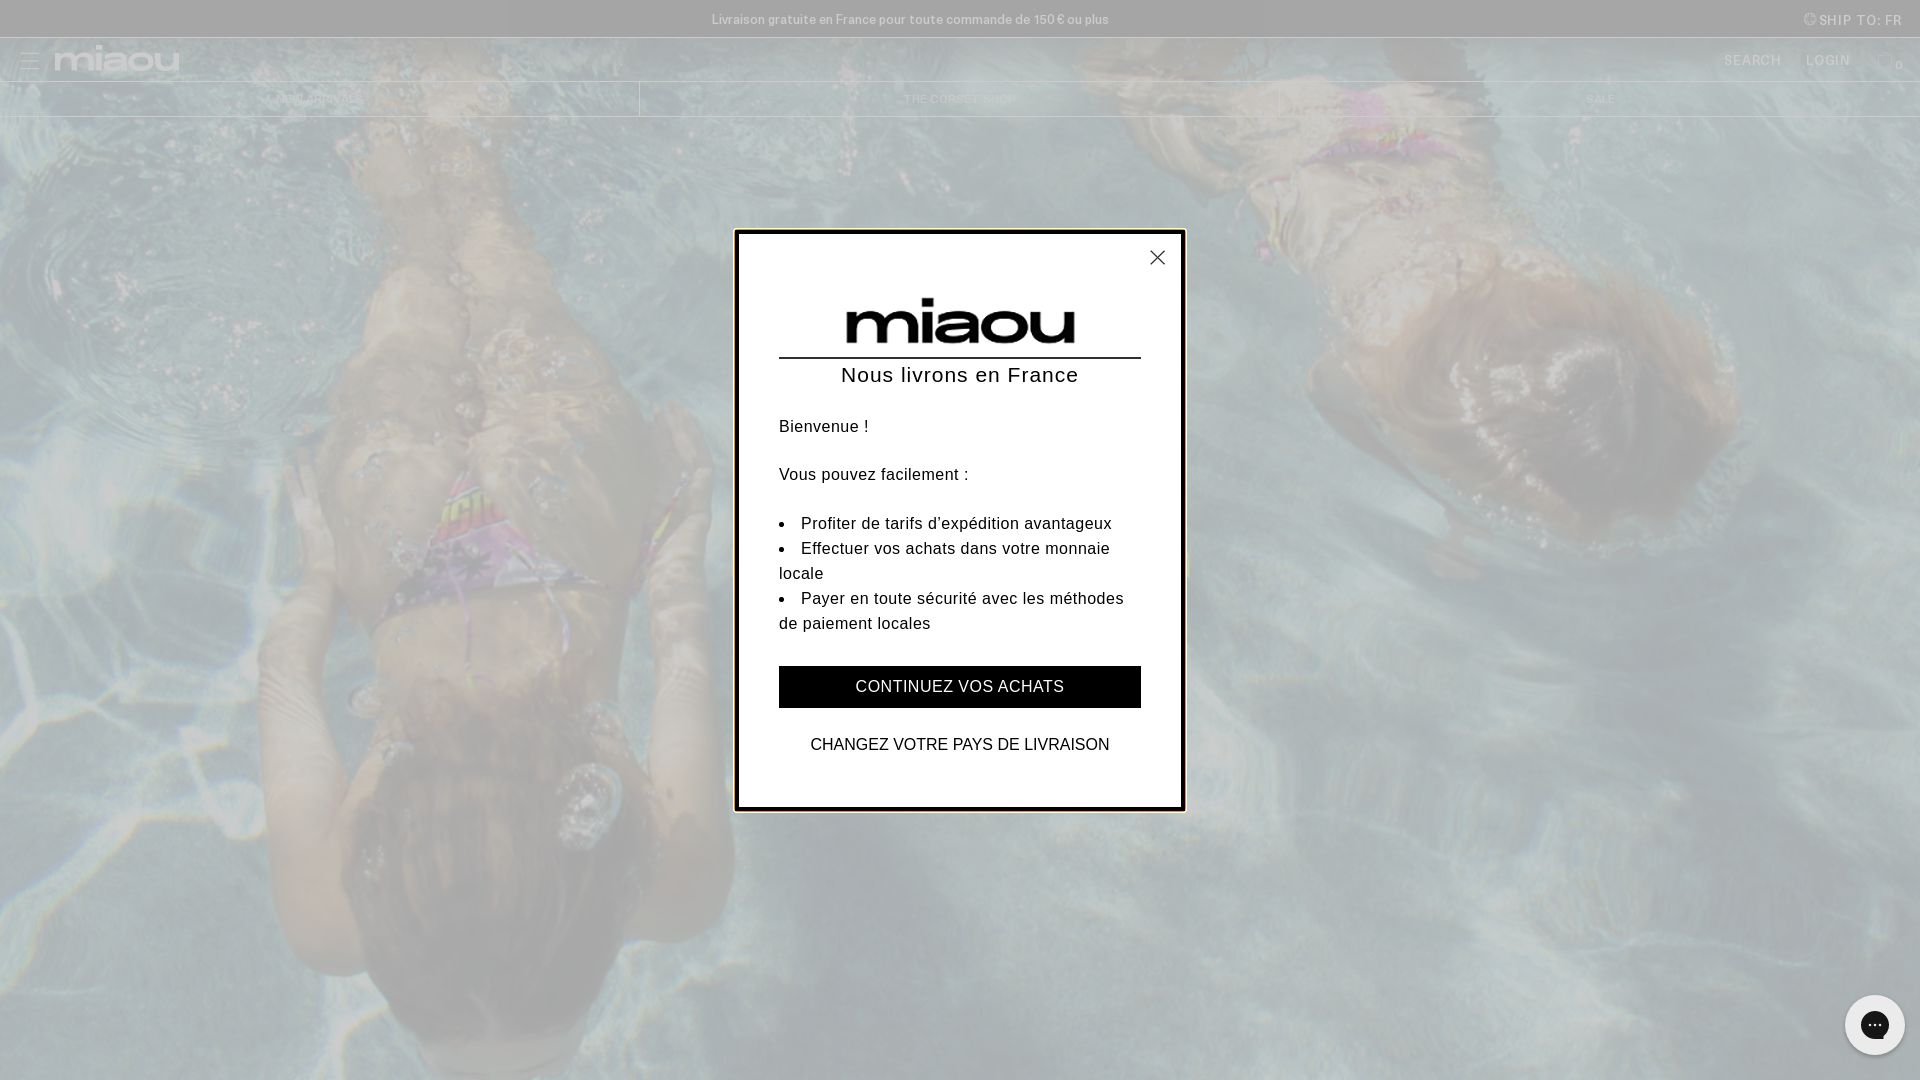 网站状态 miaou.com 是  在线的